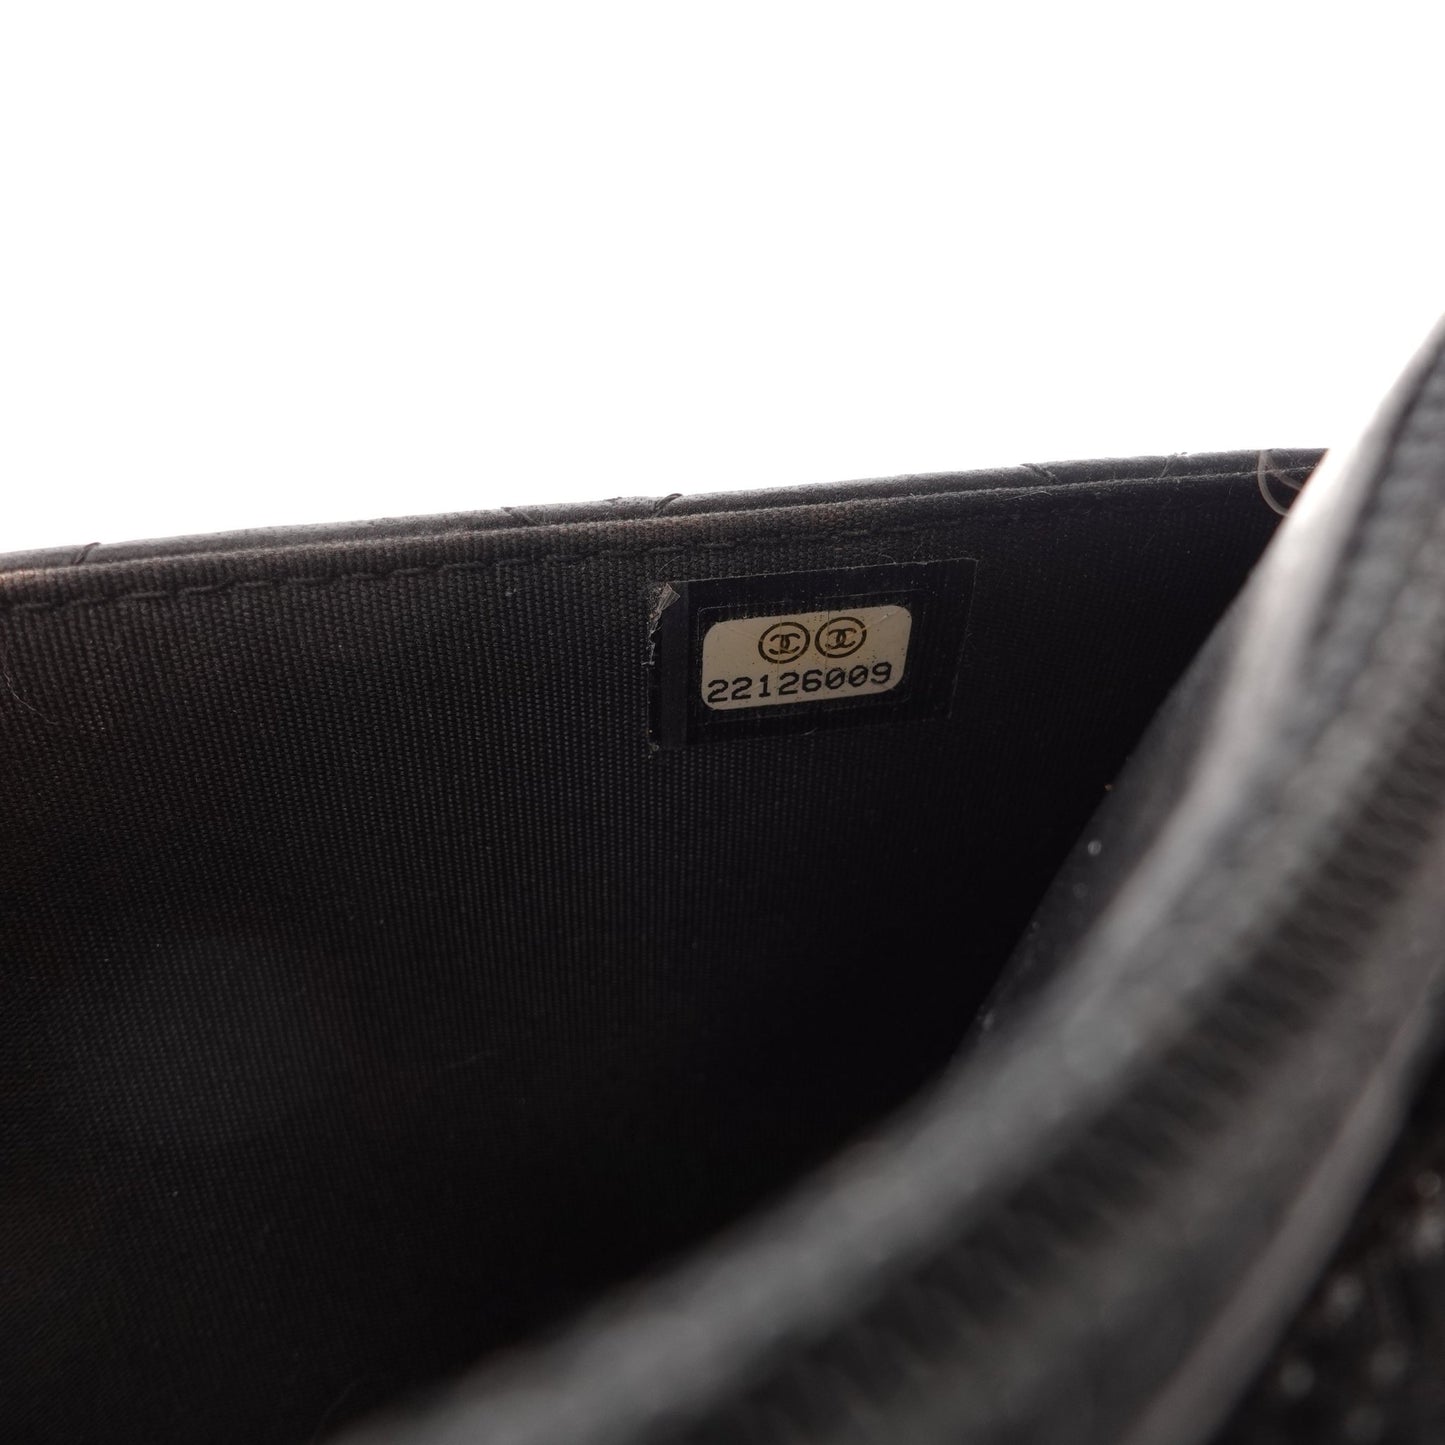 CHANEL Lambskin Leather Boy Wallet on Chain - Bag Envy